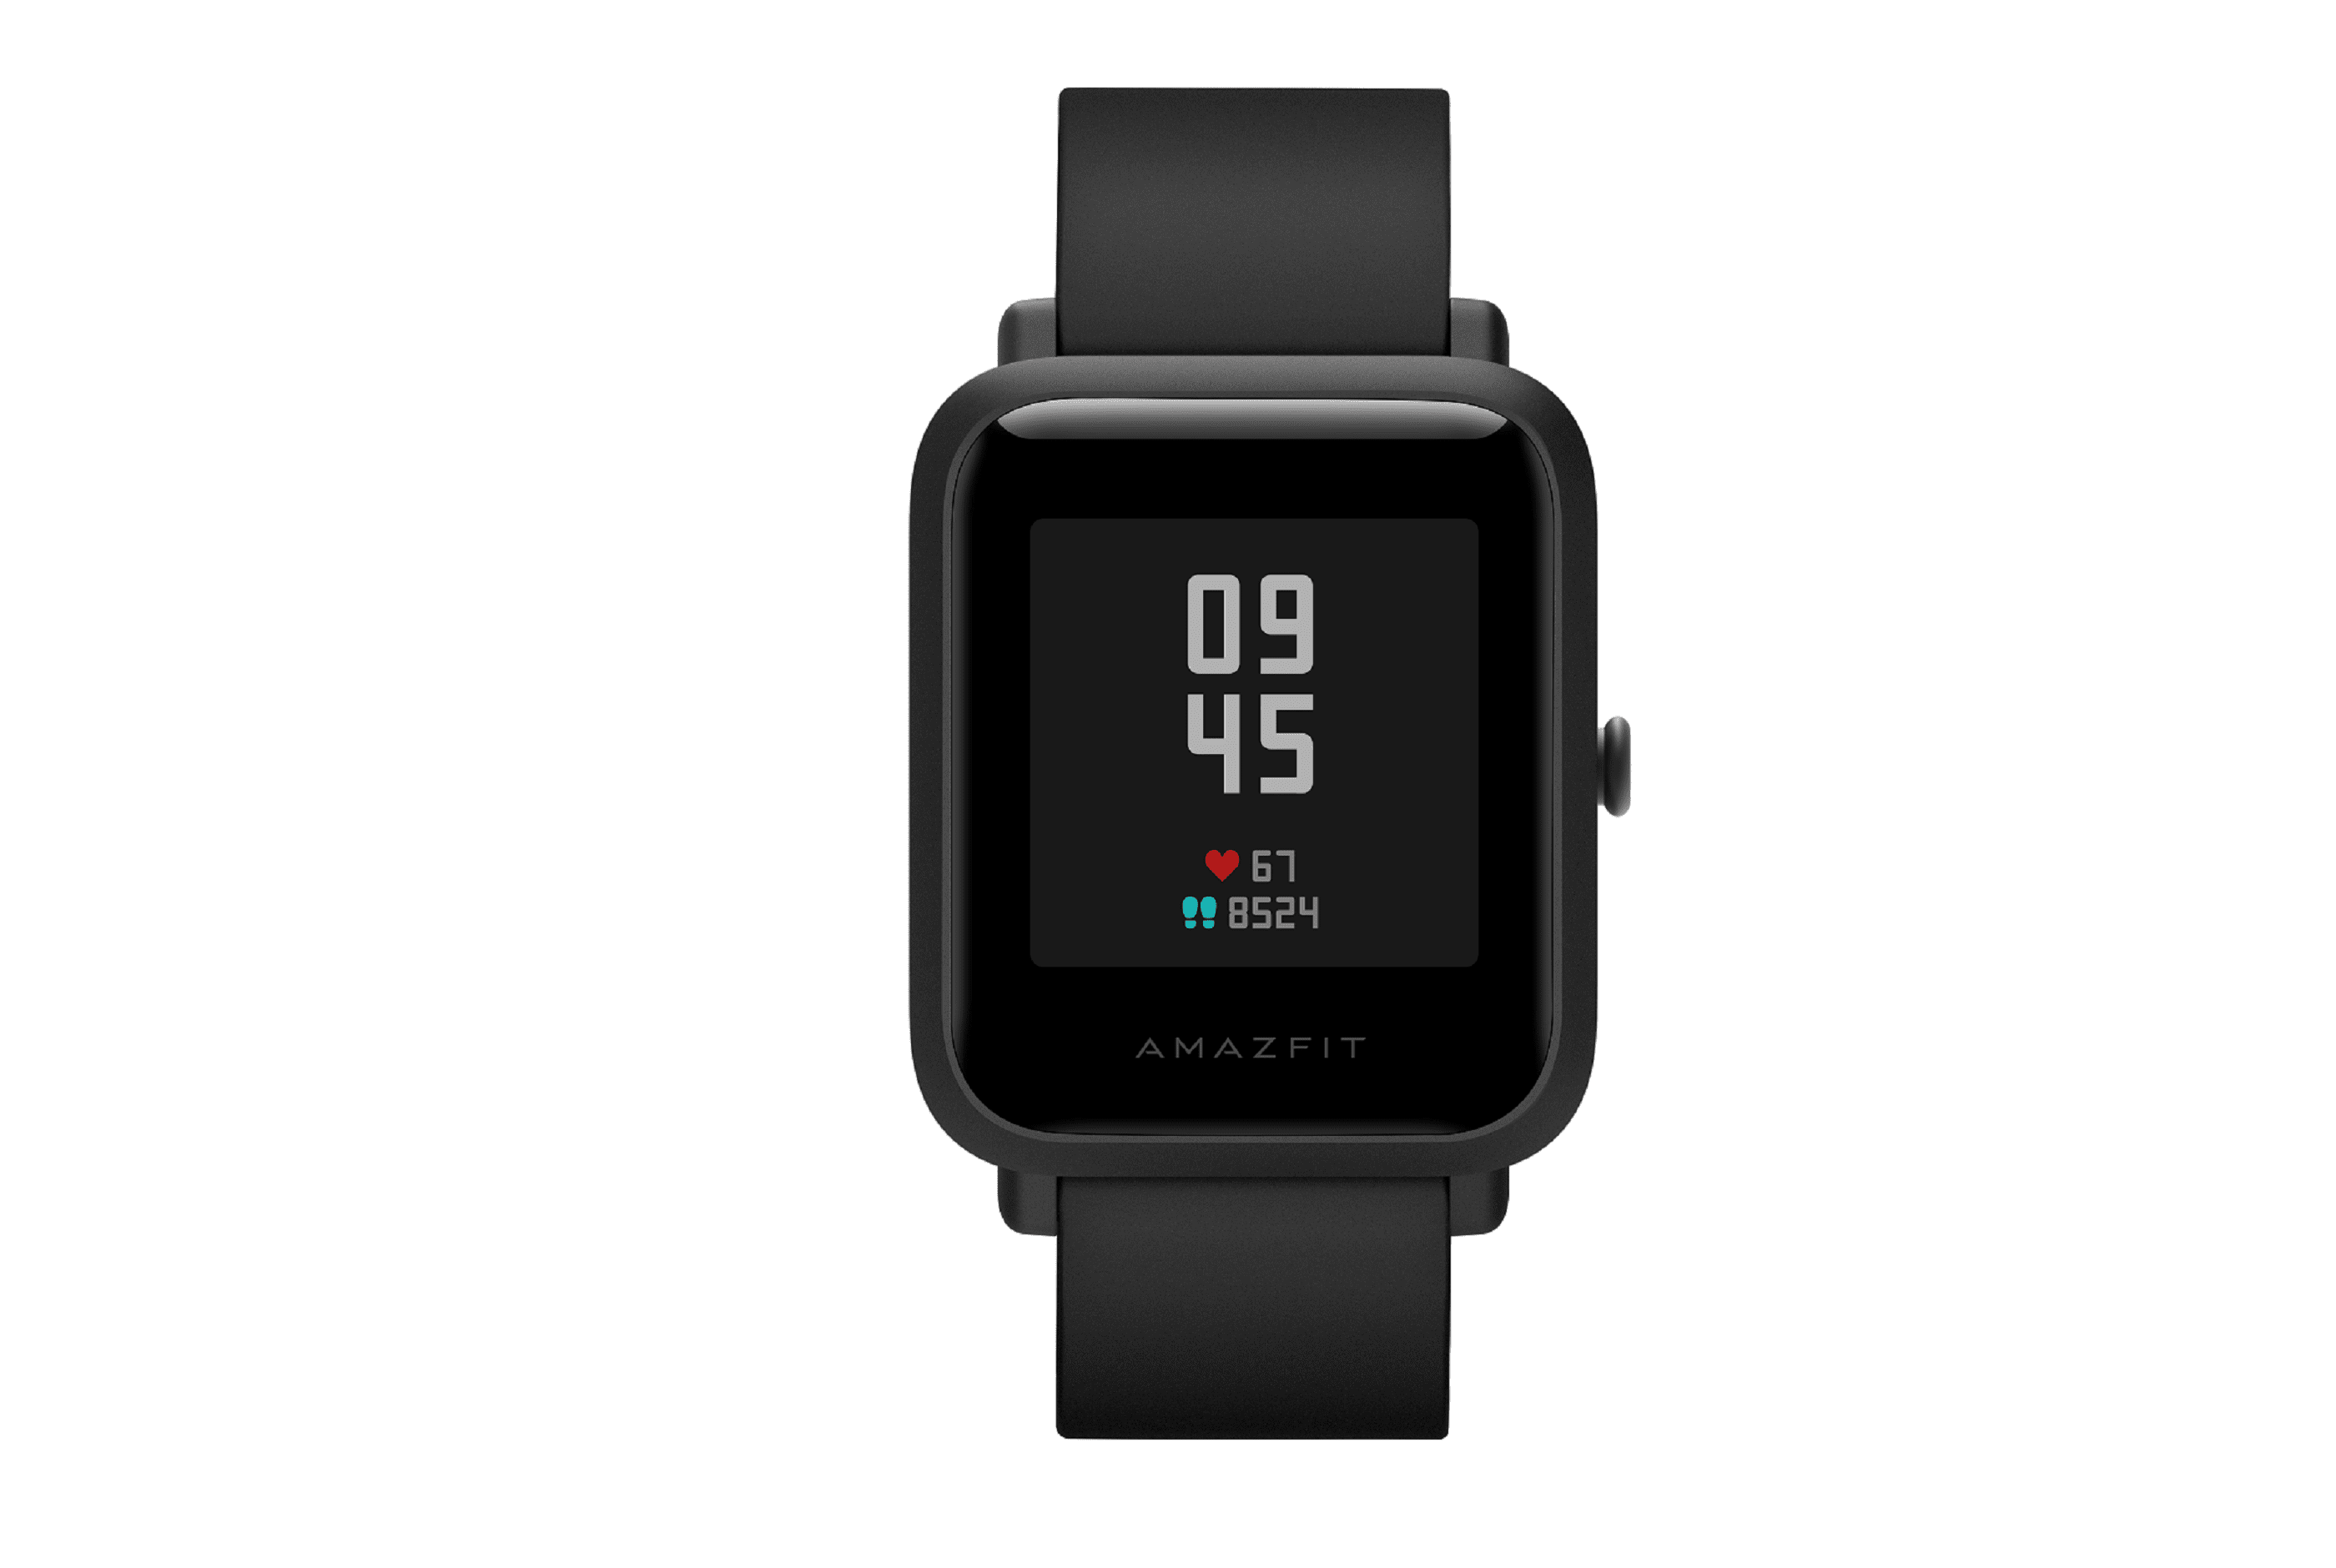 Amazfit Bip Smartwatch con GPS incorporado, lanzado en India